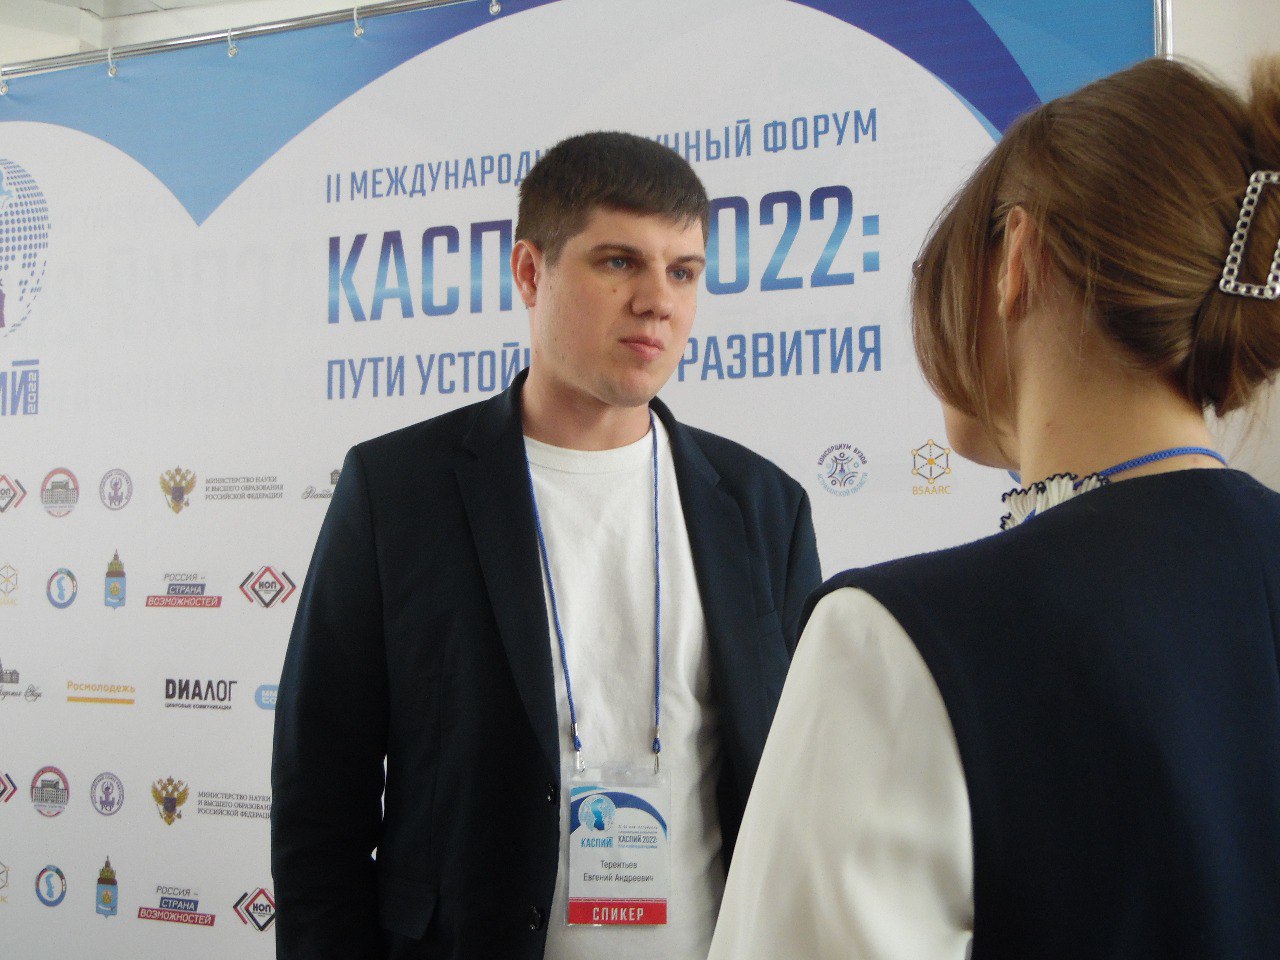 Евгений Терентьев: «Форум является важной площадкой для обсуждения широких вопросов образования и политики»